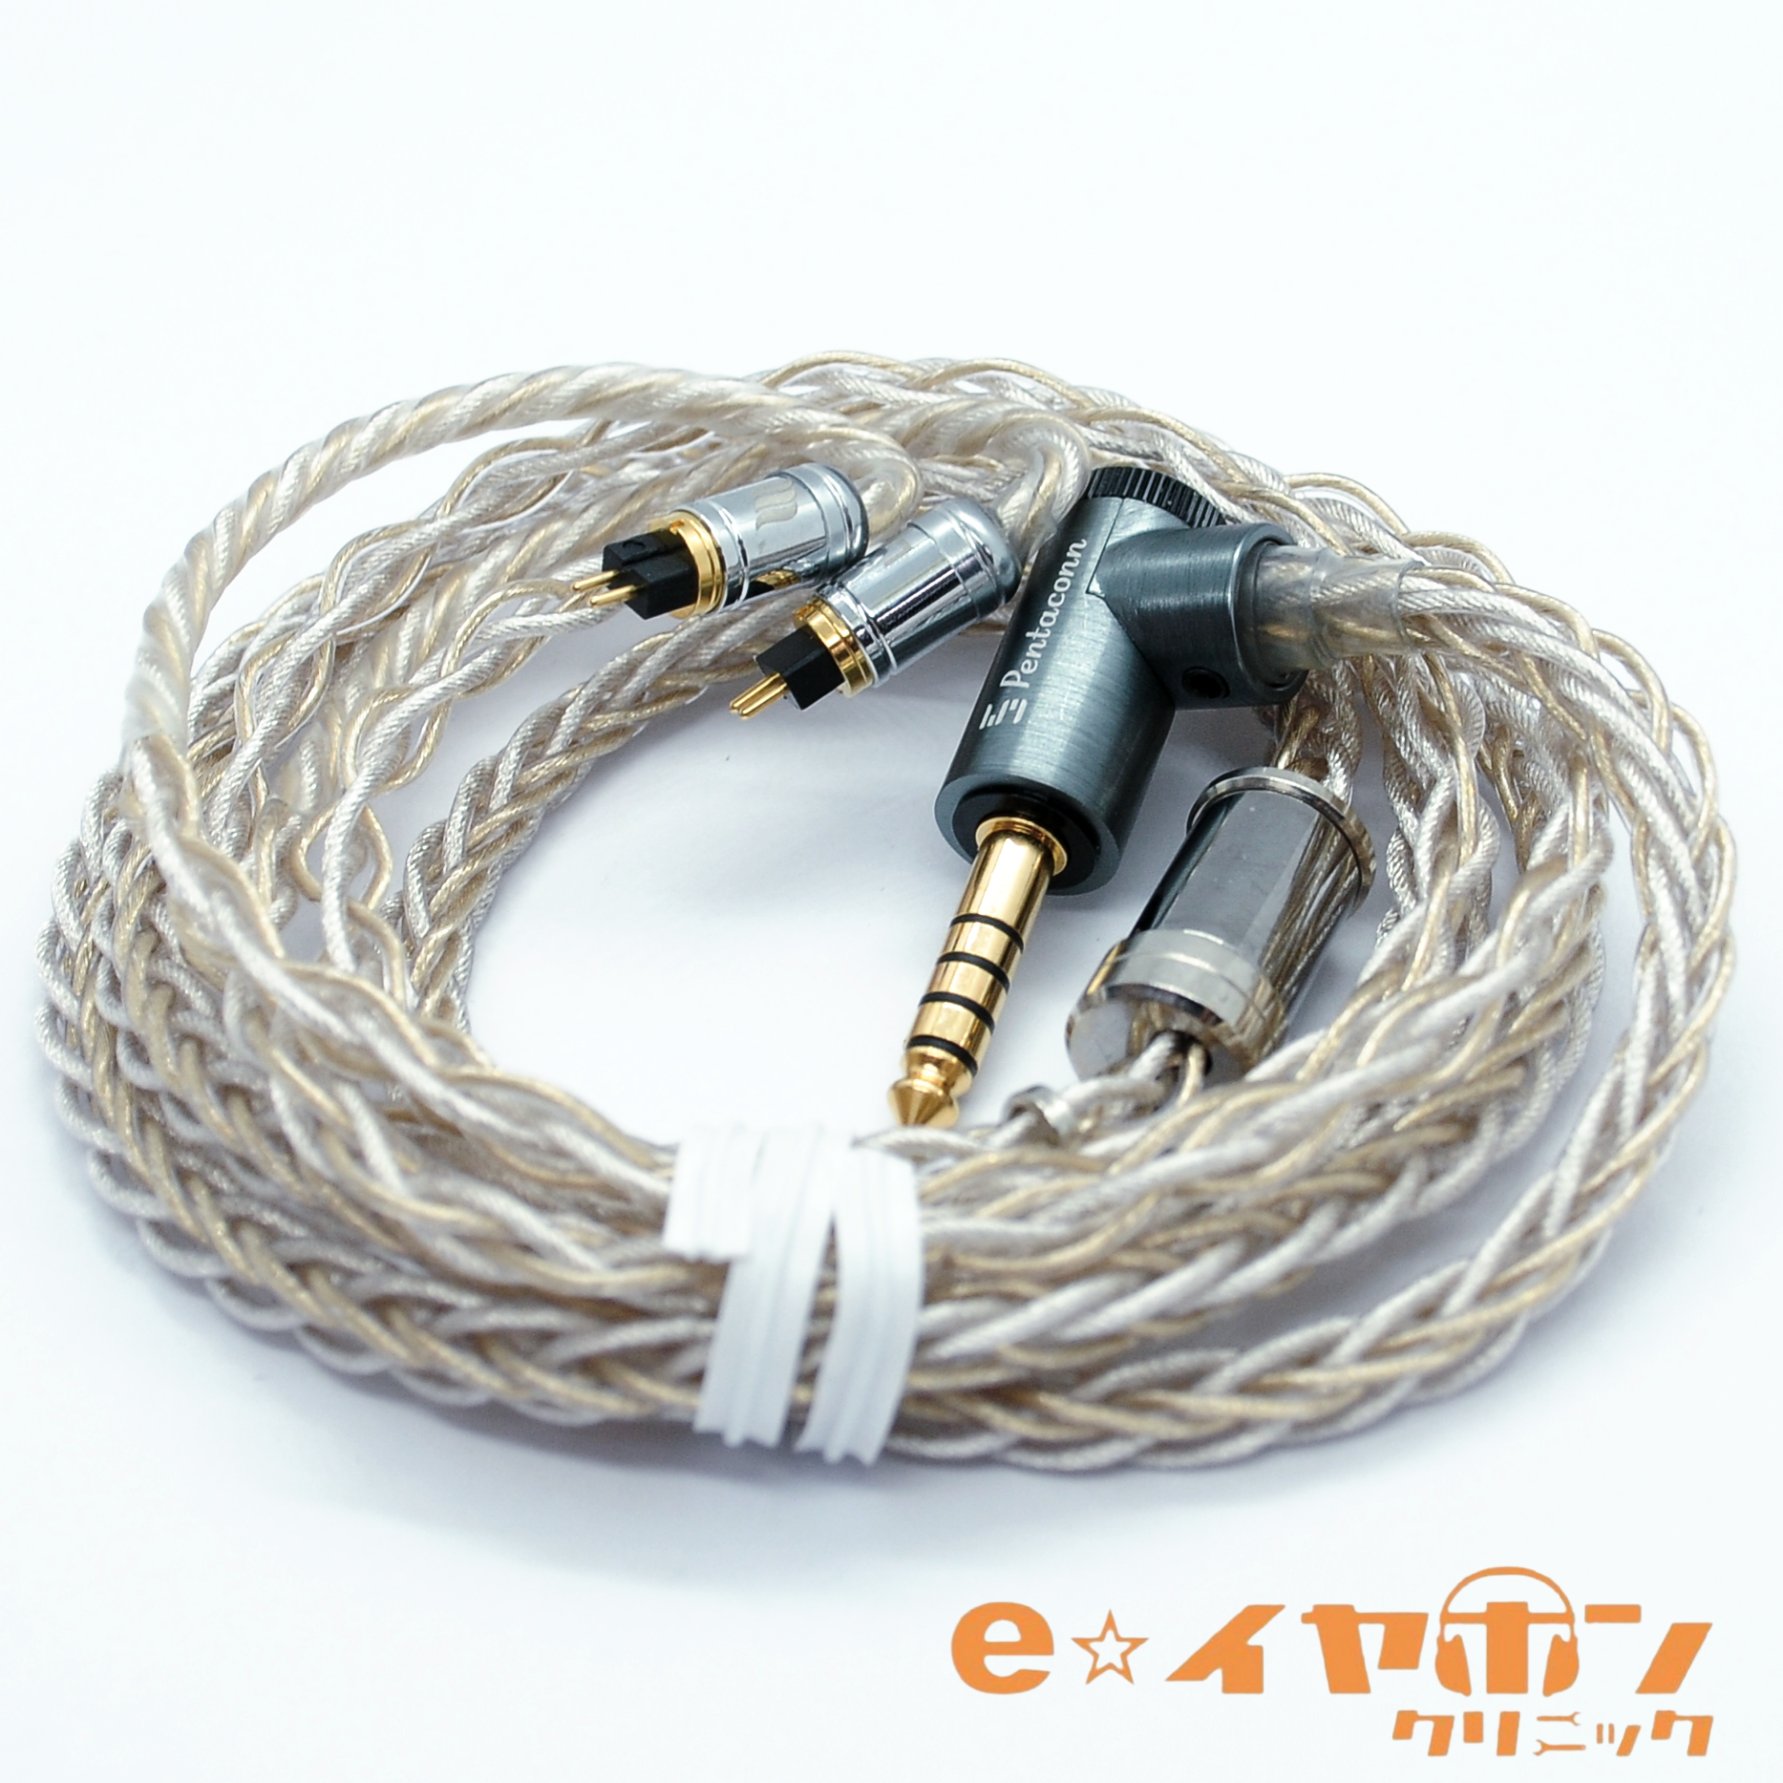 最も信頼できる 日本ディックス Ear 4.4mm-Pentaconn Sakura ケーブル